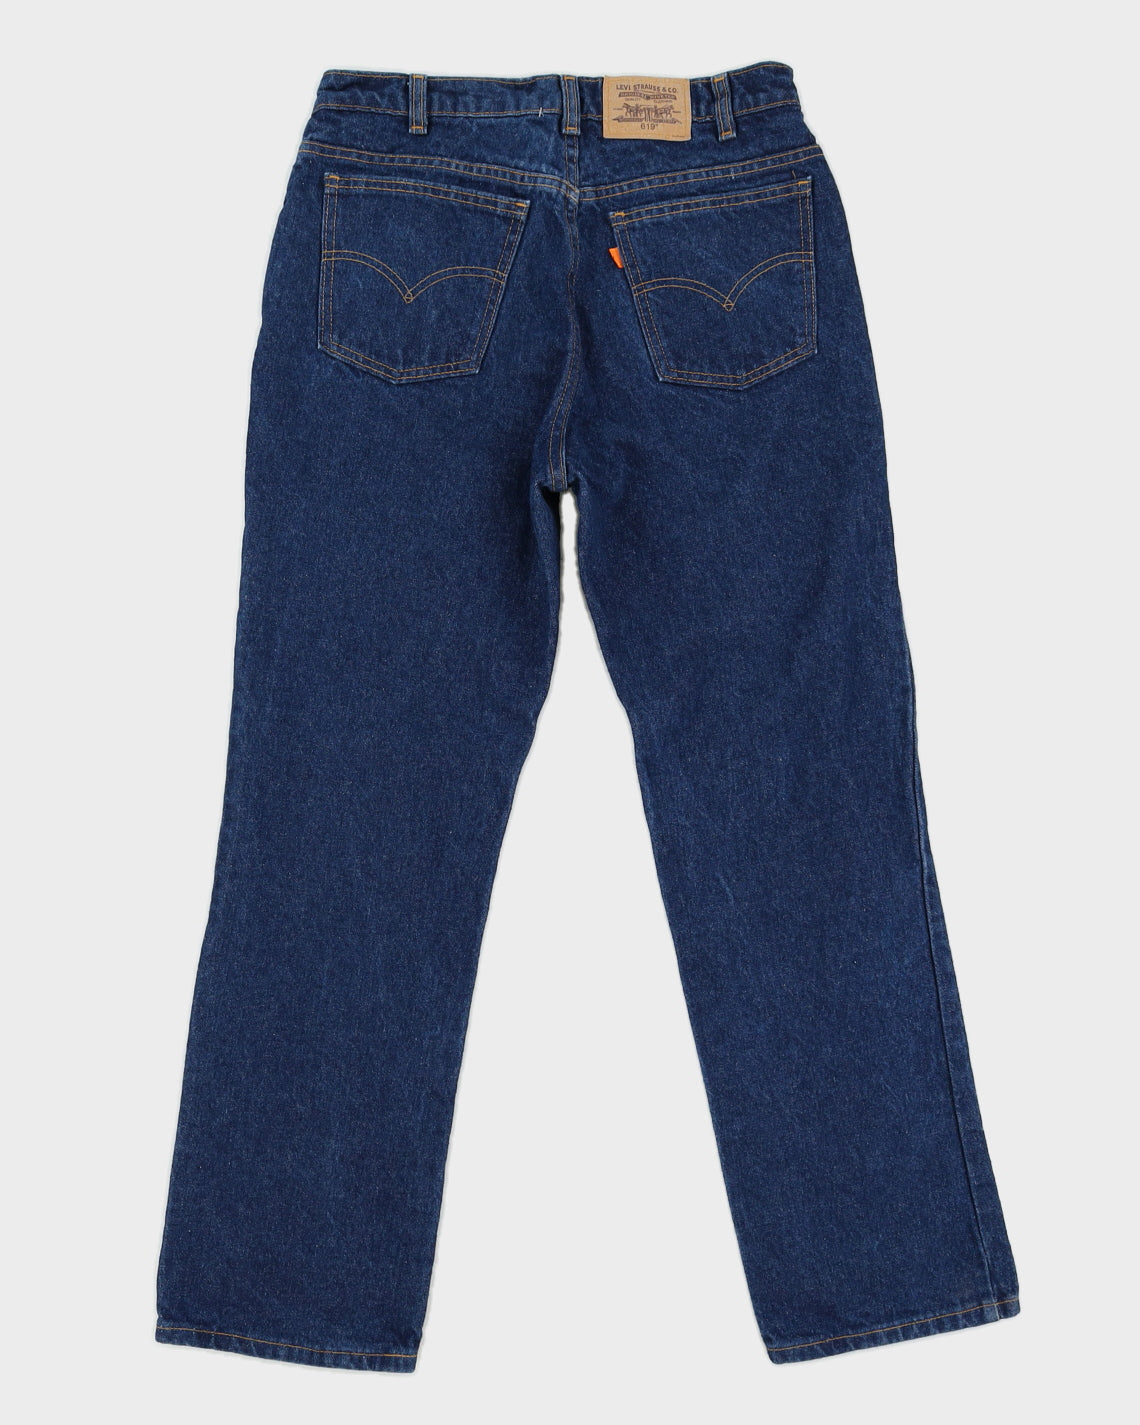 Vintage 80s Levi's Orange Blank Tab Blue Jeans - W32 L30